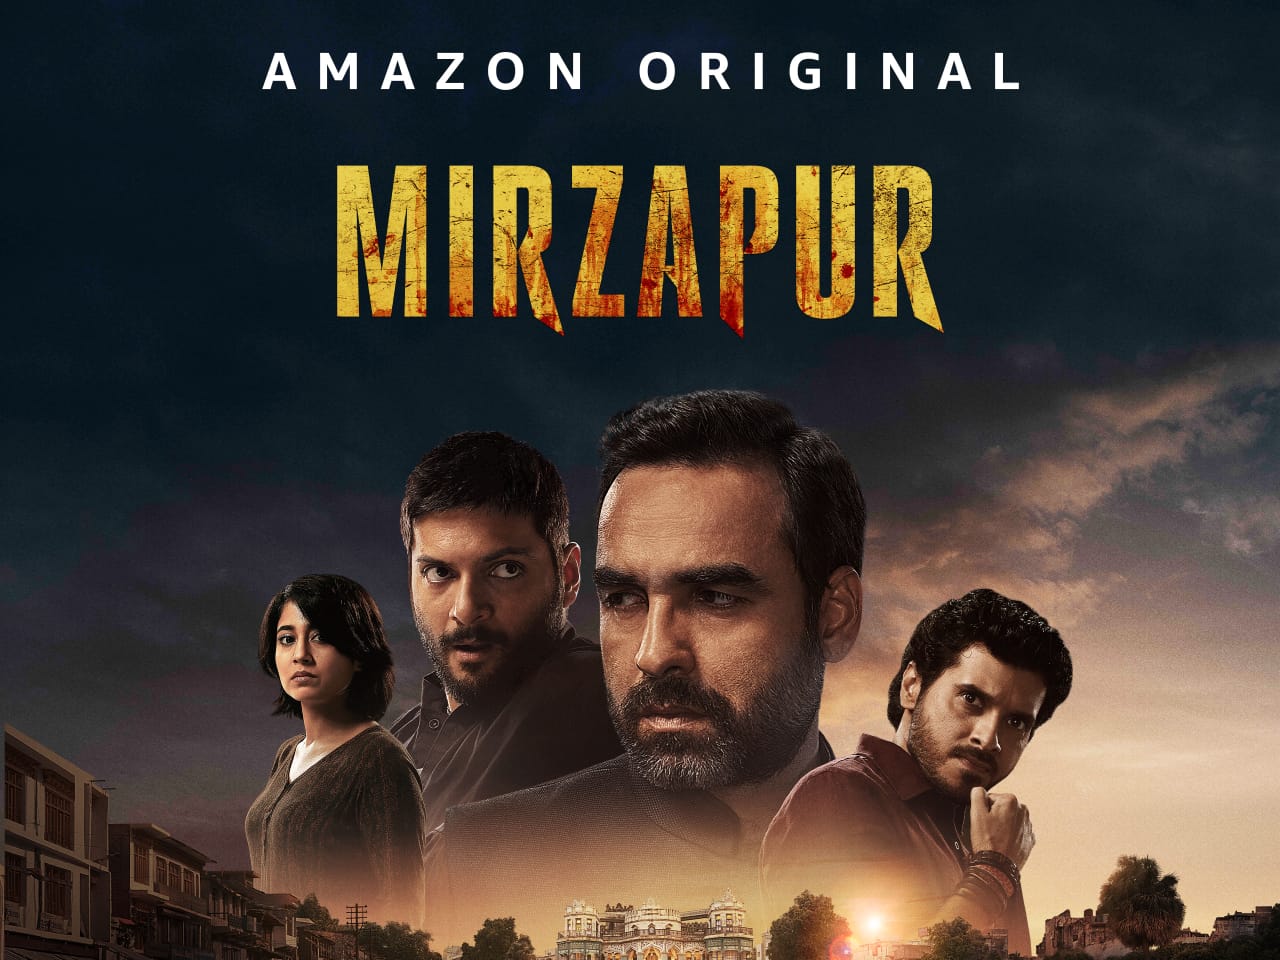 Mirzapur Season 3 Release